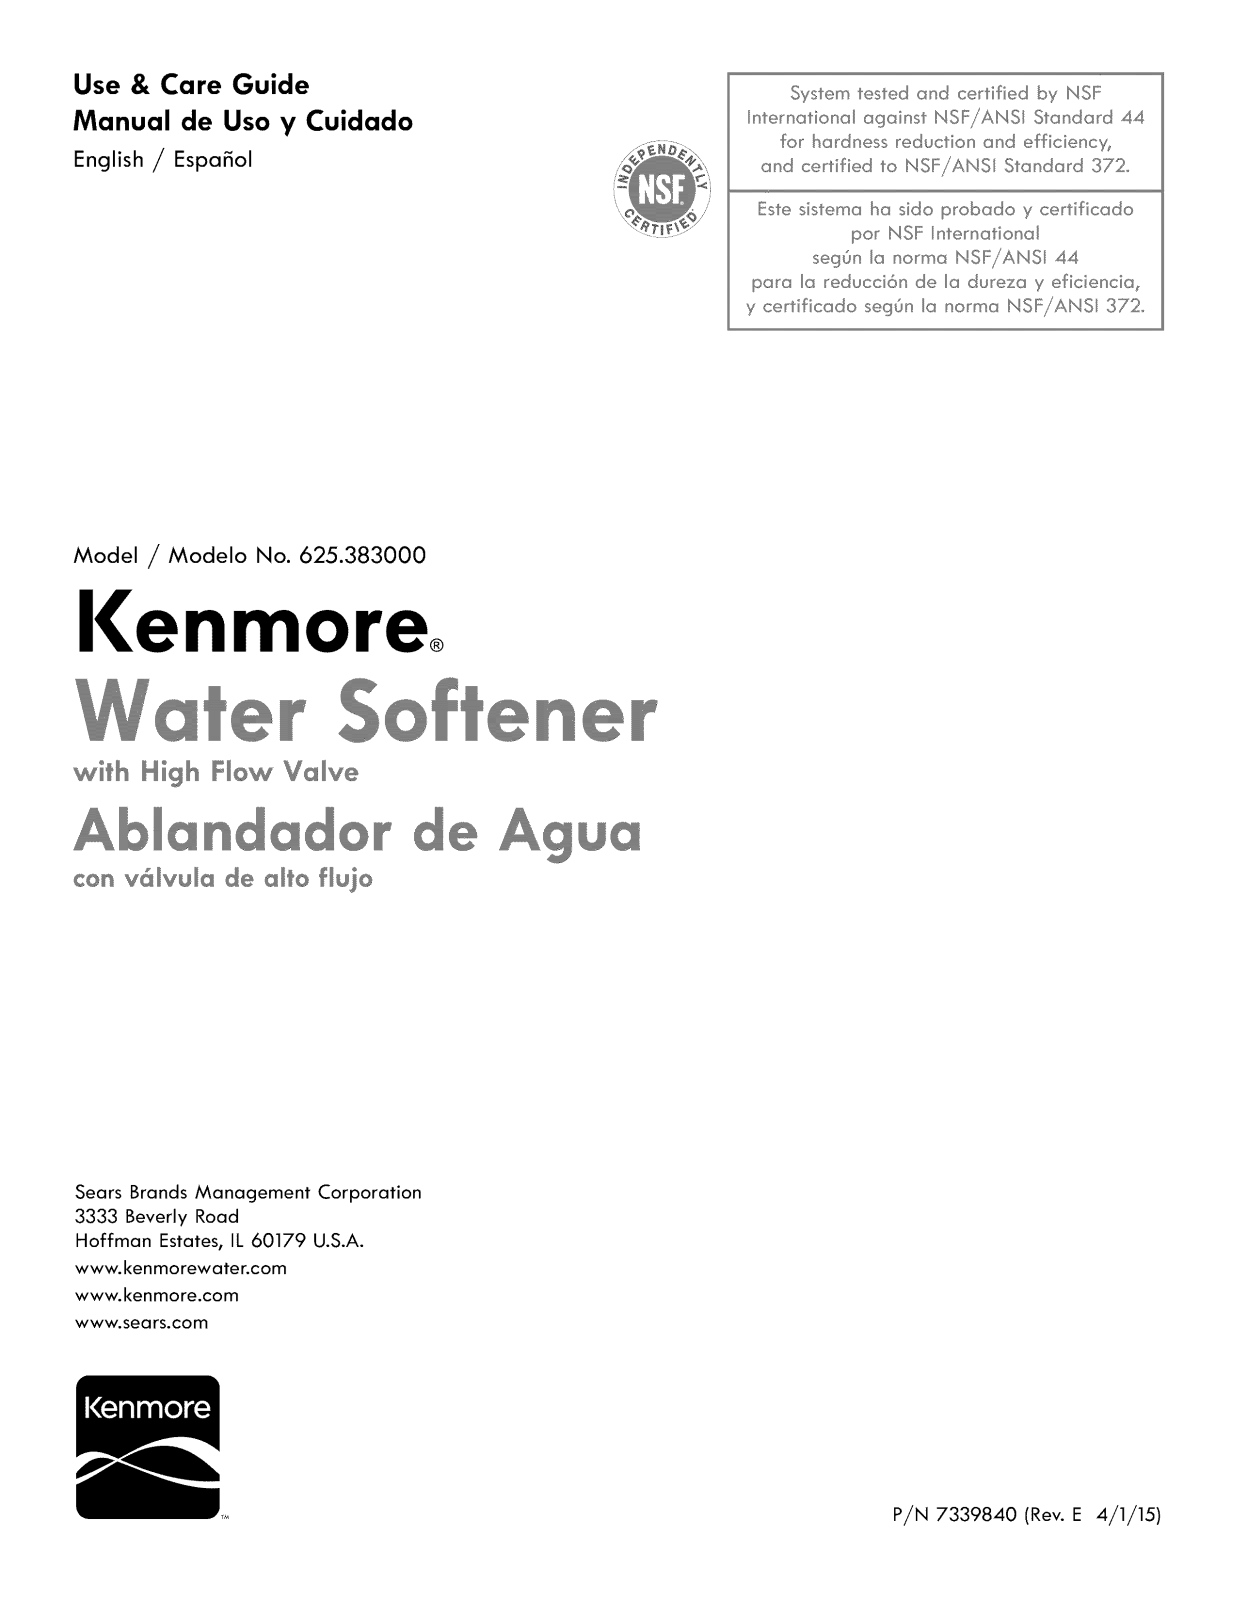 Kenmore 625383001, 625383000 Owner’s Manual